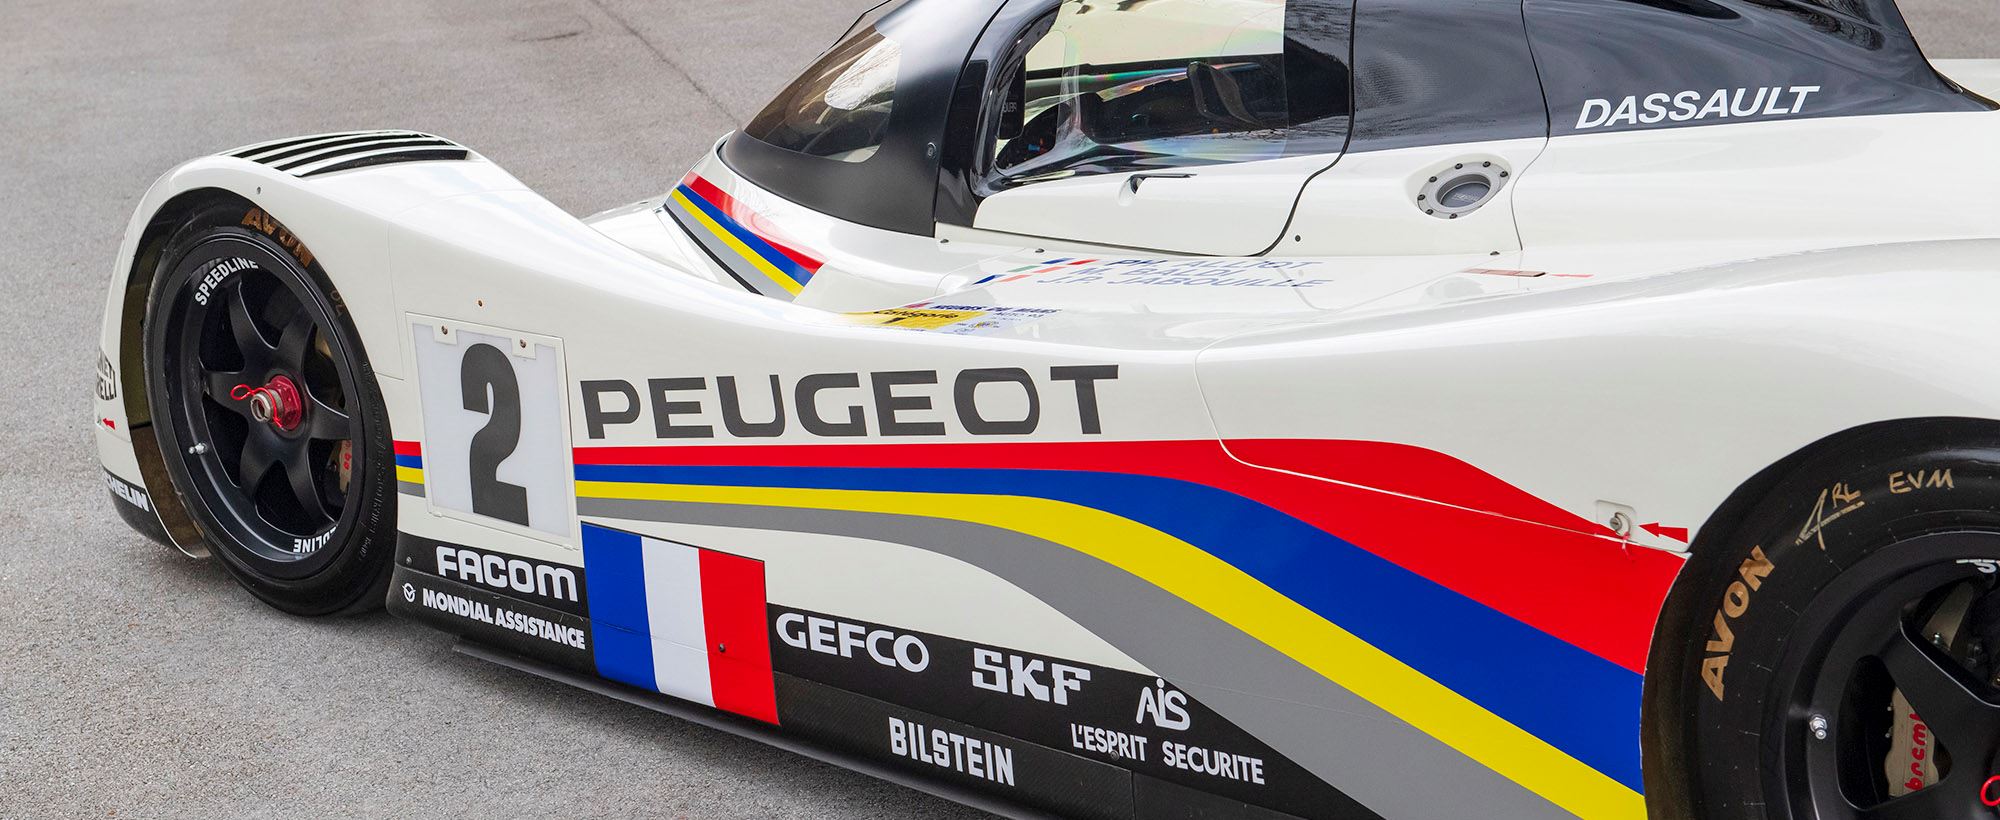 Peugeot 905 043.jpg